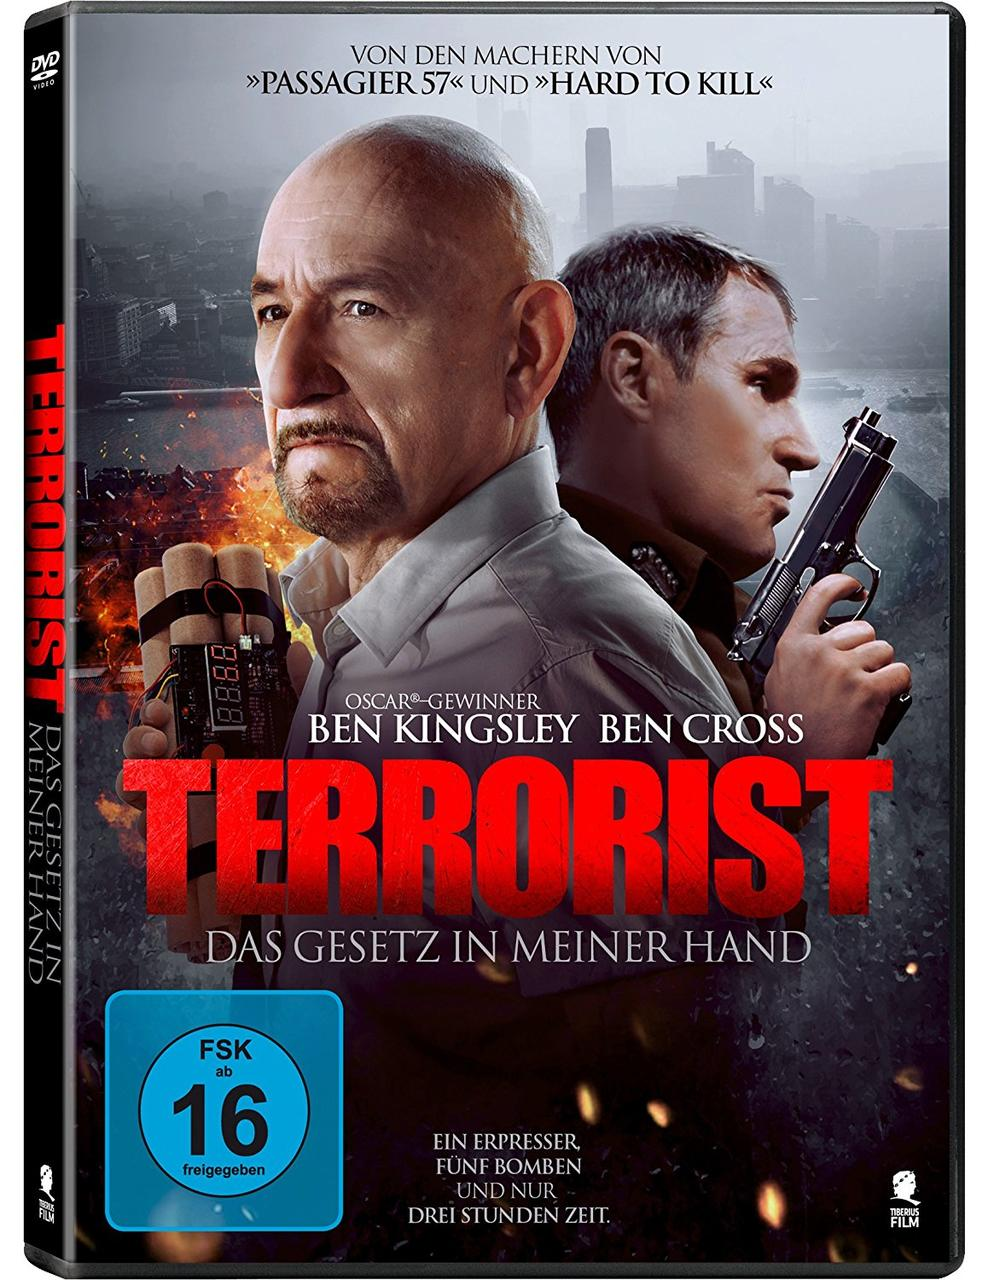 DAS GESETZ MEINER HAND DVD - IN TERRORIST